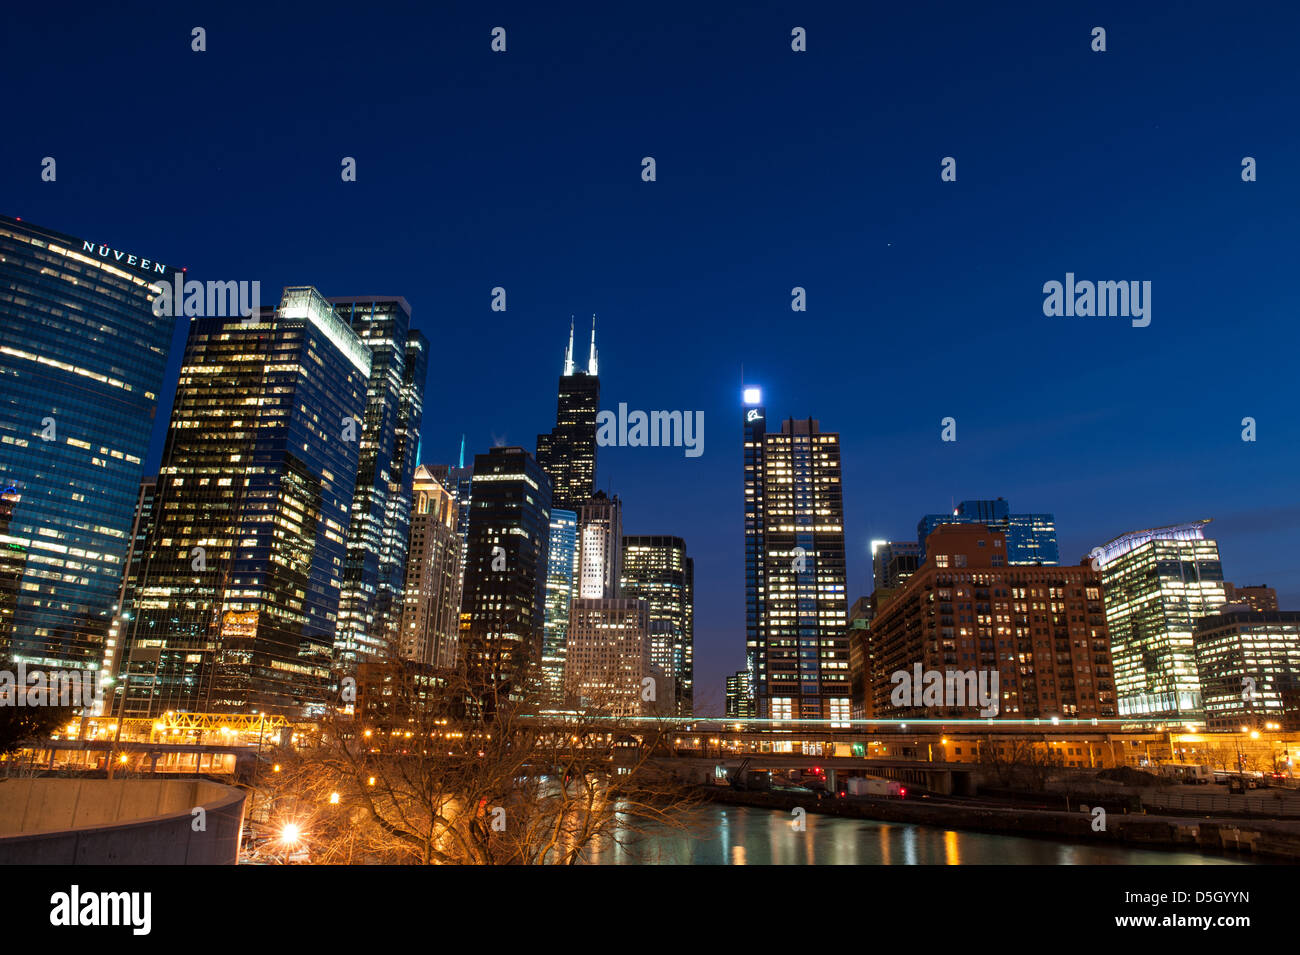 CHICAGO - 28. März: Nachtansicht von Chicago, USA Skyline, einschließlich der Willis Tower und the Boeing Company am 28. März 2013. Stockfoto